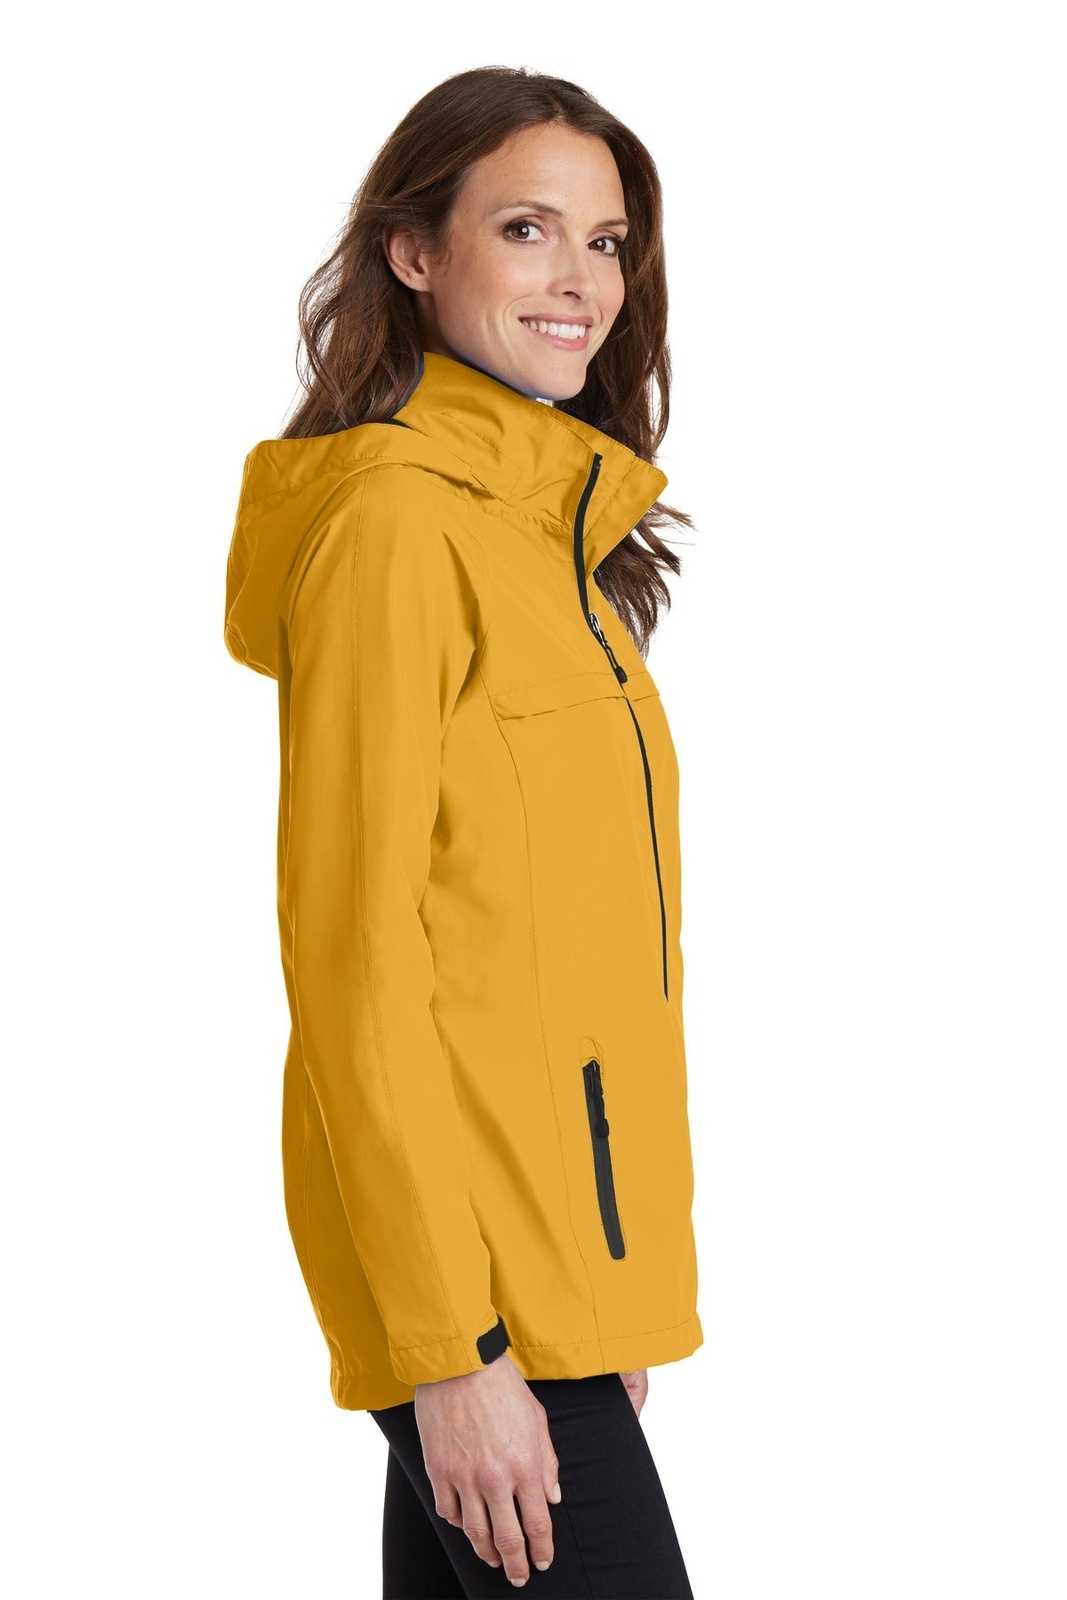 Port Authority L333 Ladies Torrent Waterproof Jacket - Slicker Yellow - HIT a Double - 3